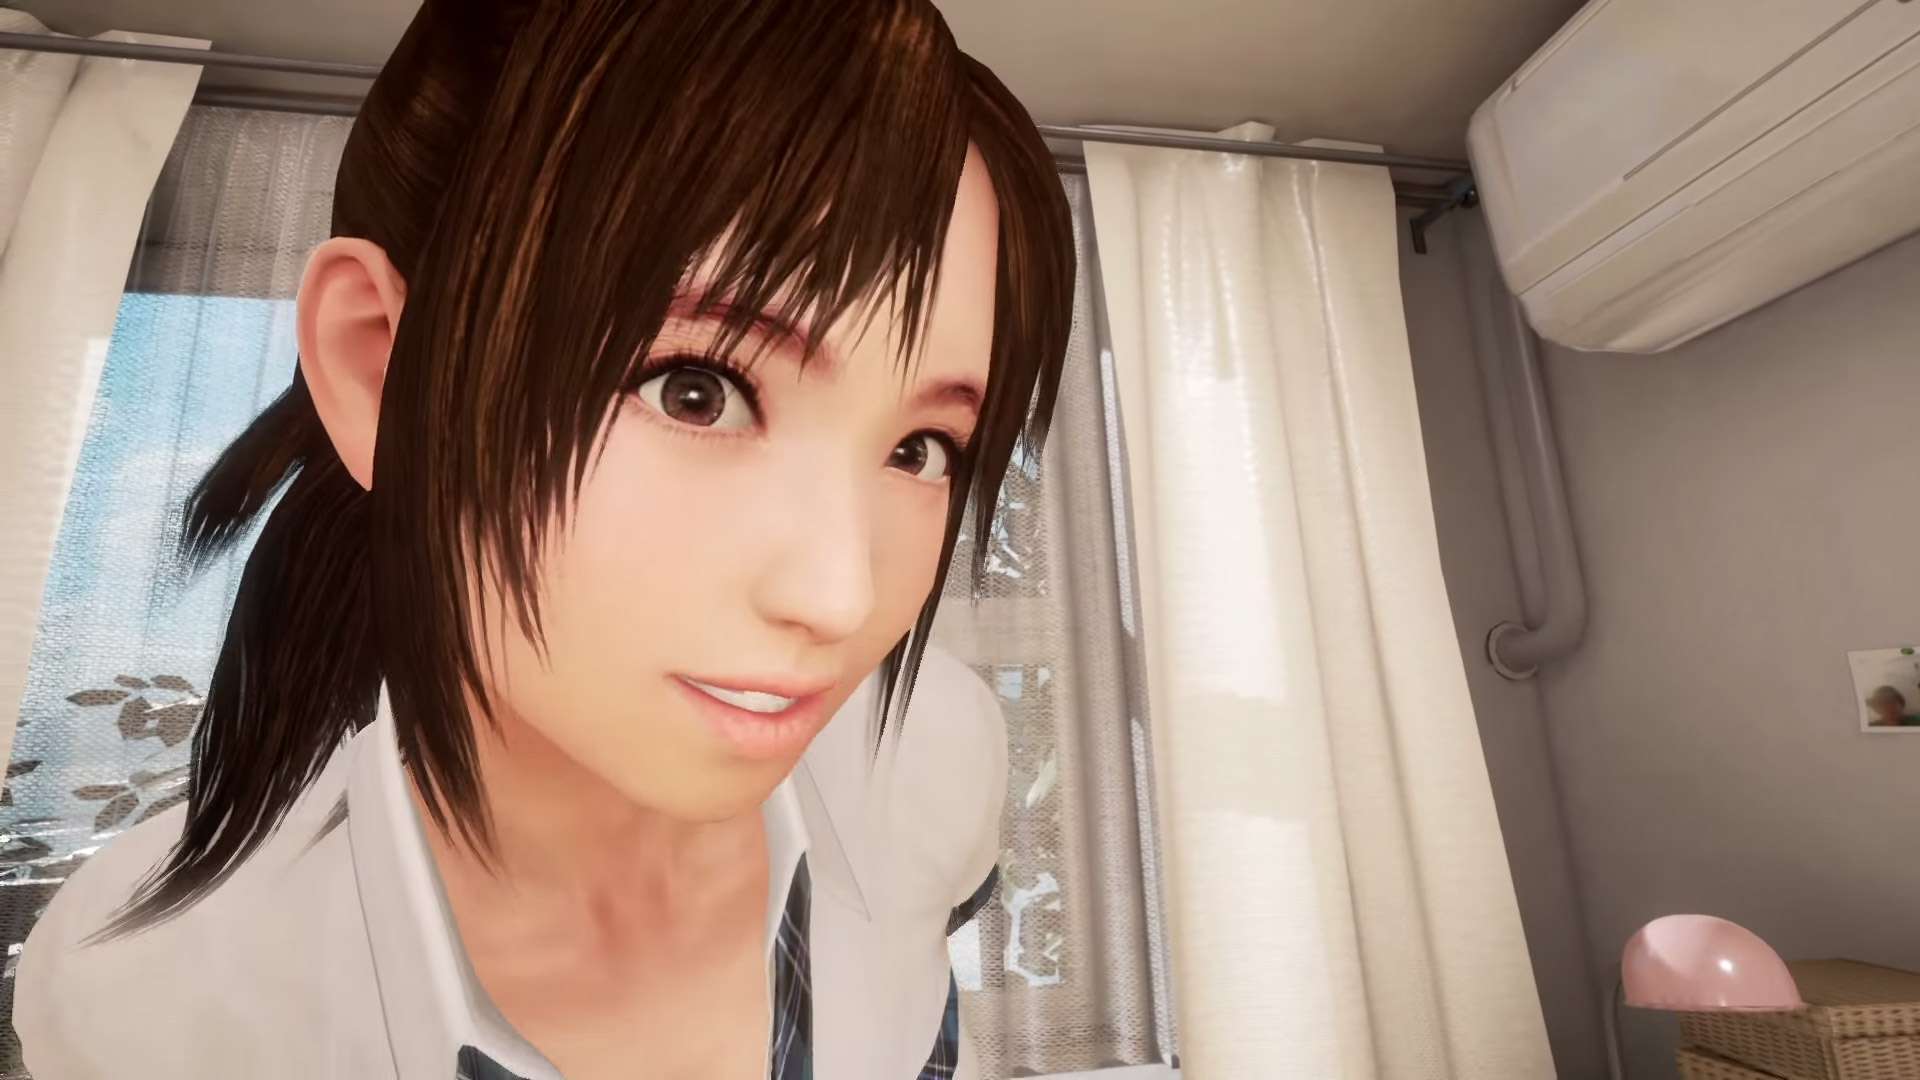 Summer Lesson najlepiej sprzedającą się grą na PS VR w Japonii; zobaczcie zwiastun DLC